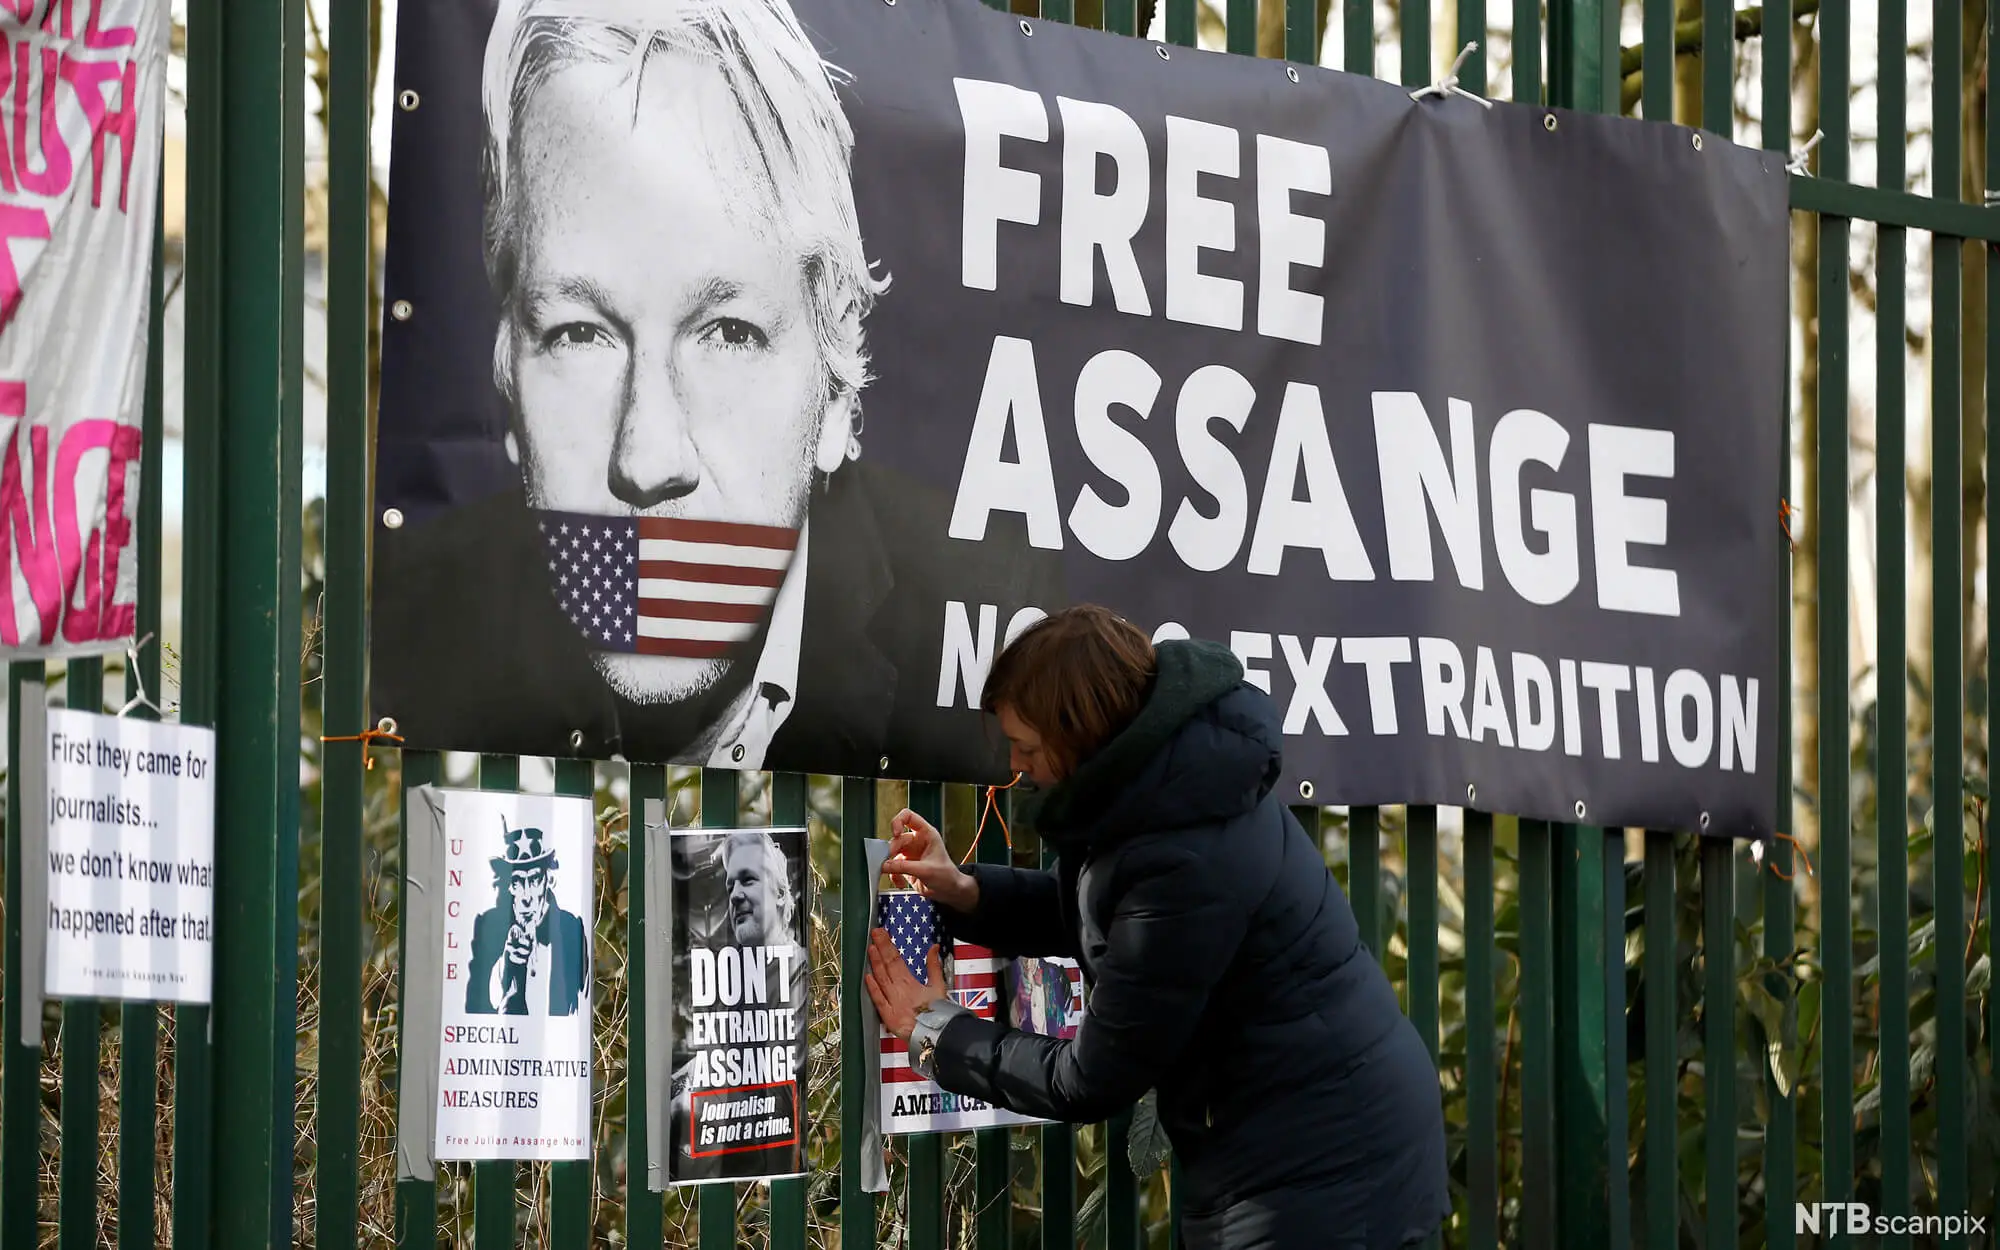 Il caso Assange: la libertà di stampa è davvero senza limiti?